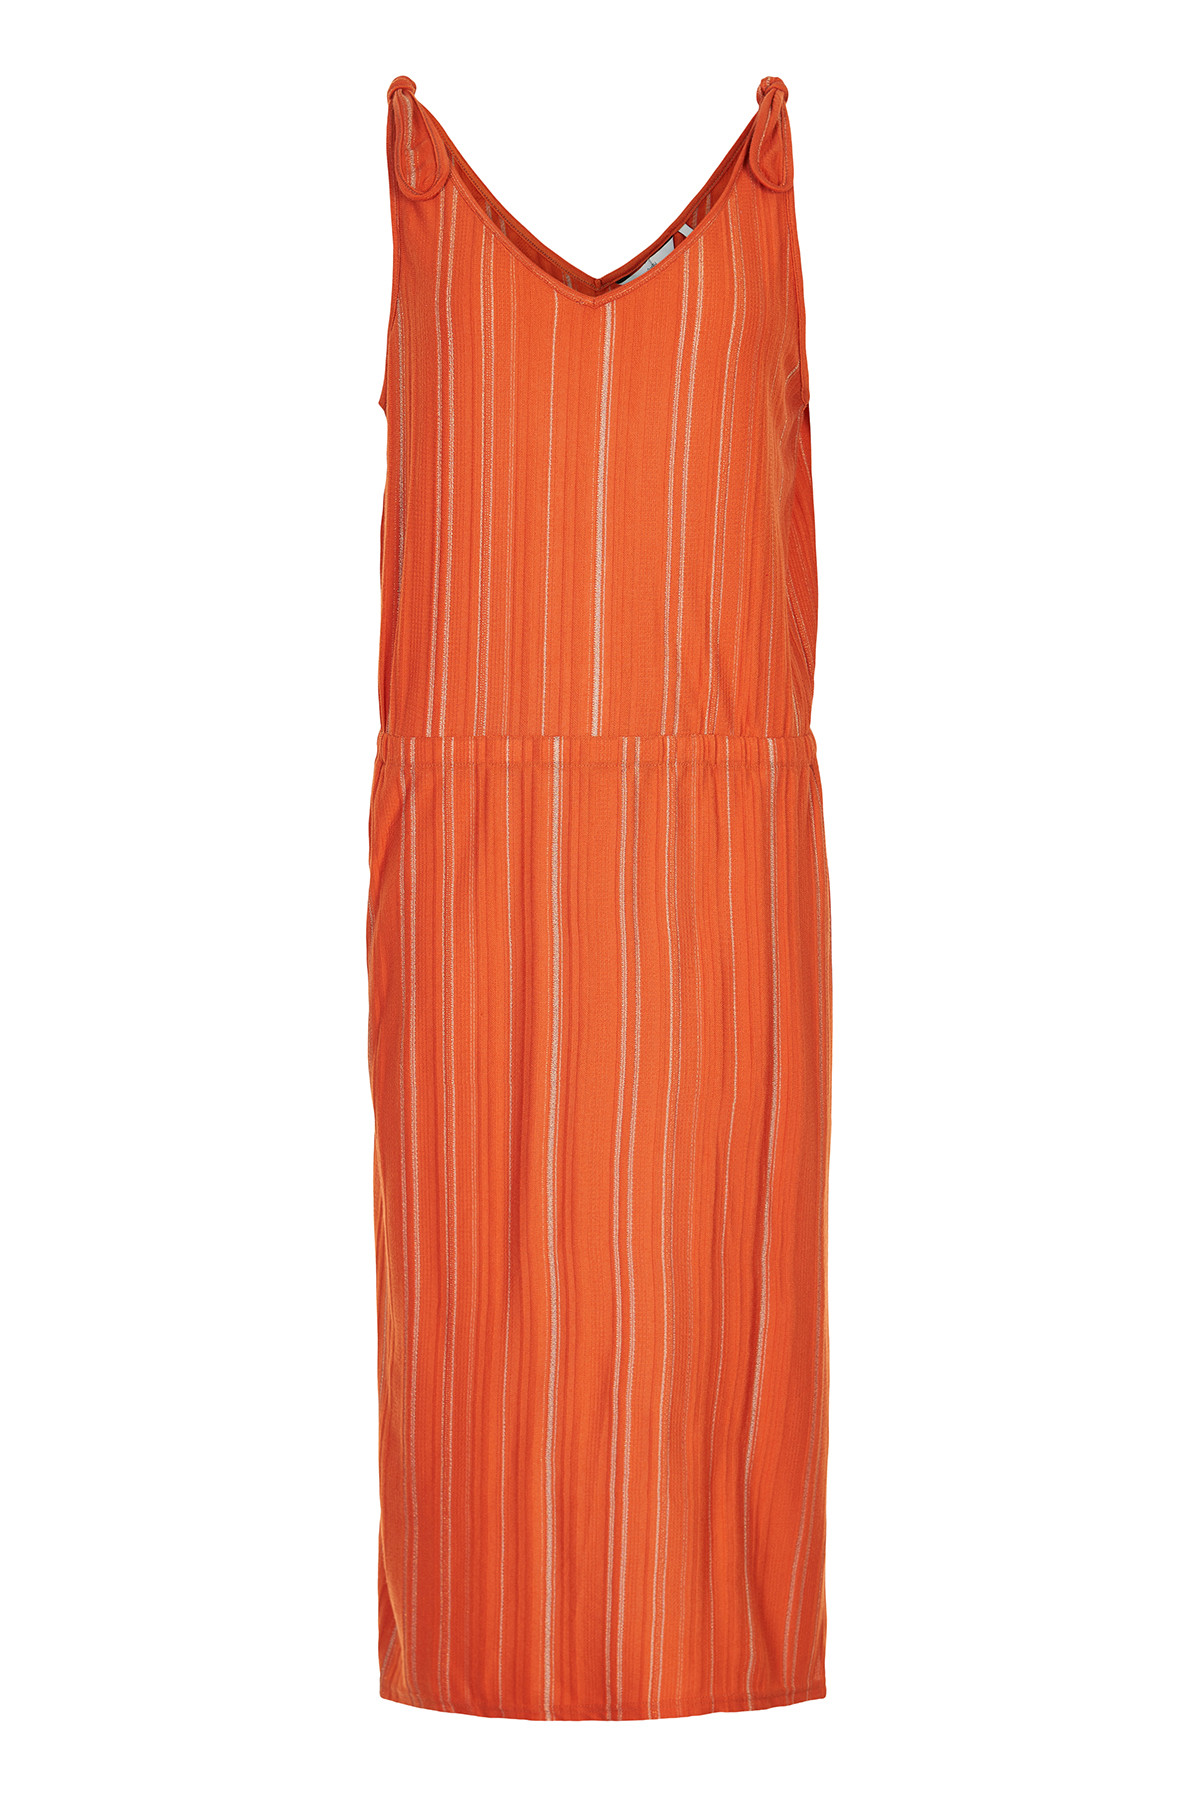 Nümph Nubridger Jersey Kjole, Farve: Orange, Størrelse: L, Dame